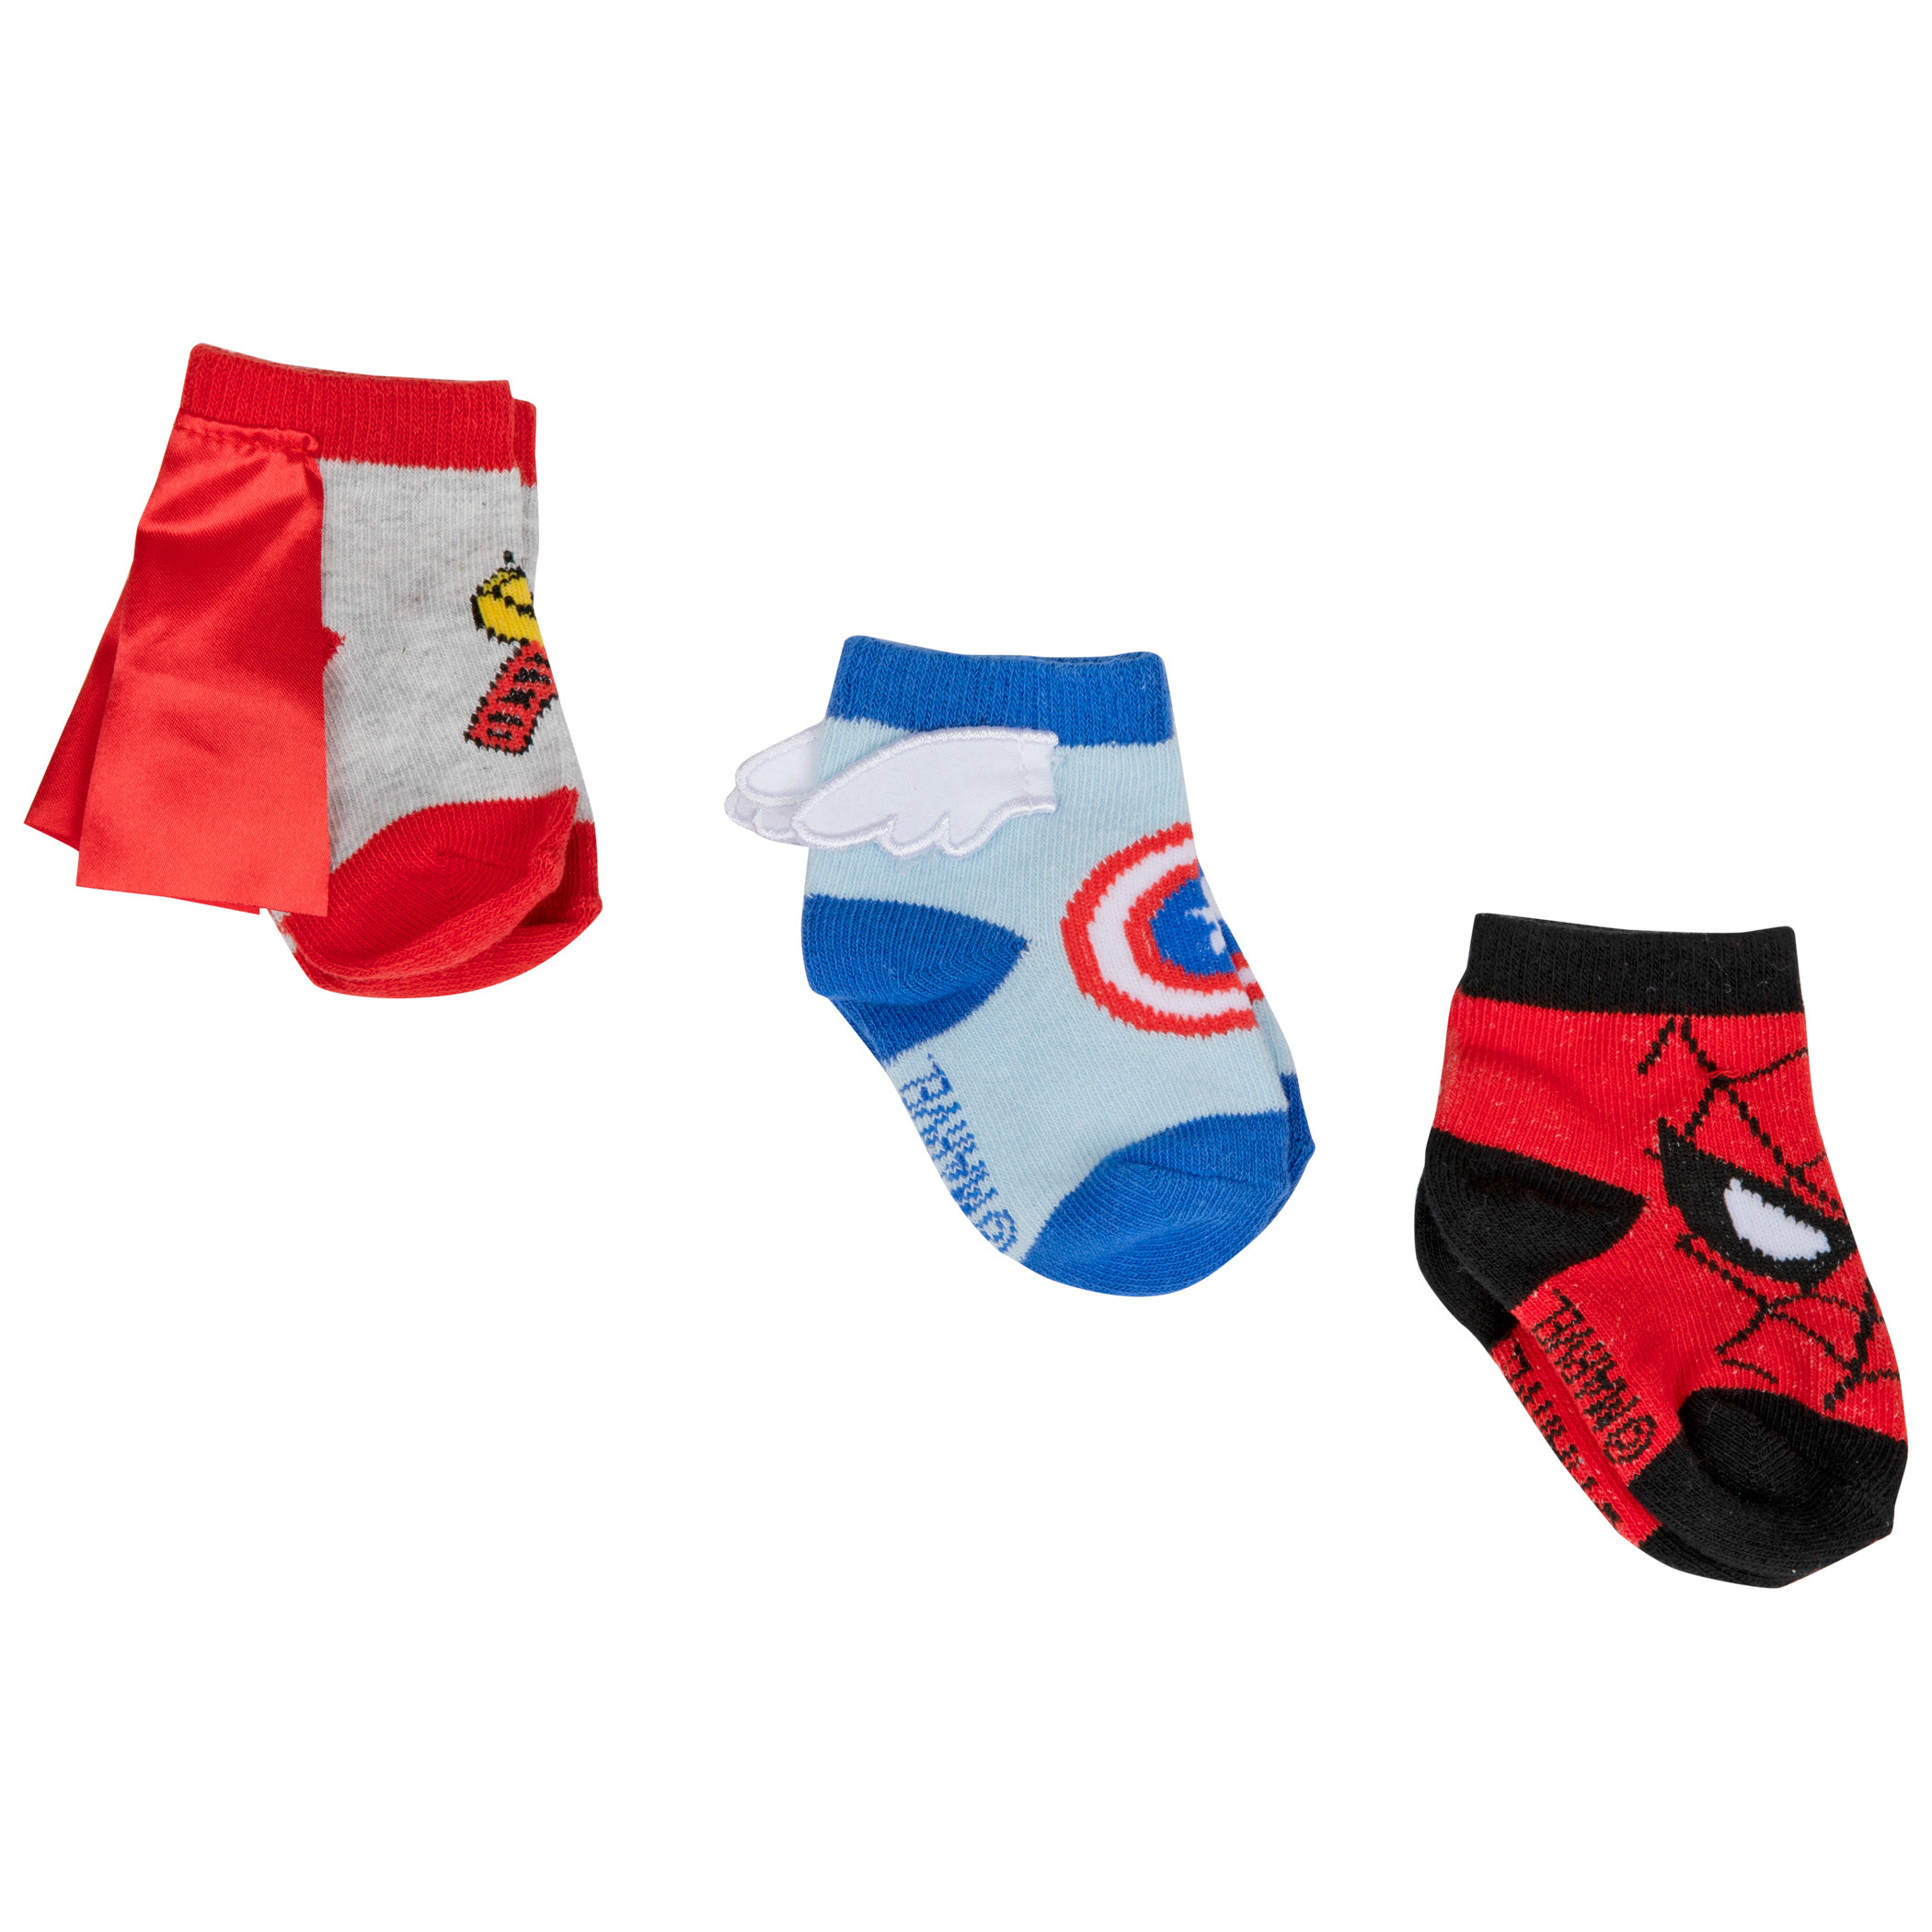 Marvel Hero Logo Sock Booties 3-Pack